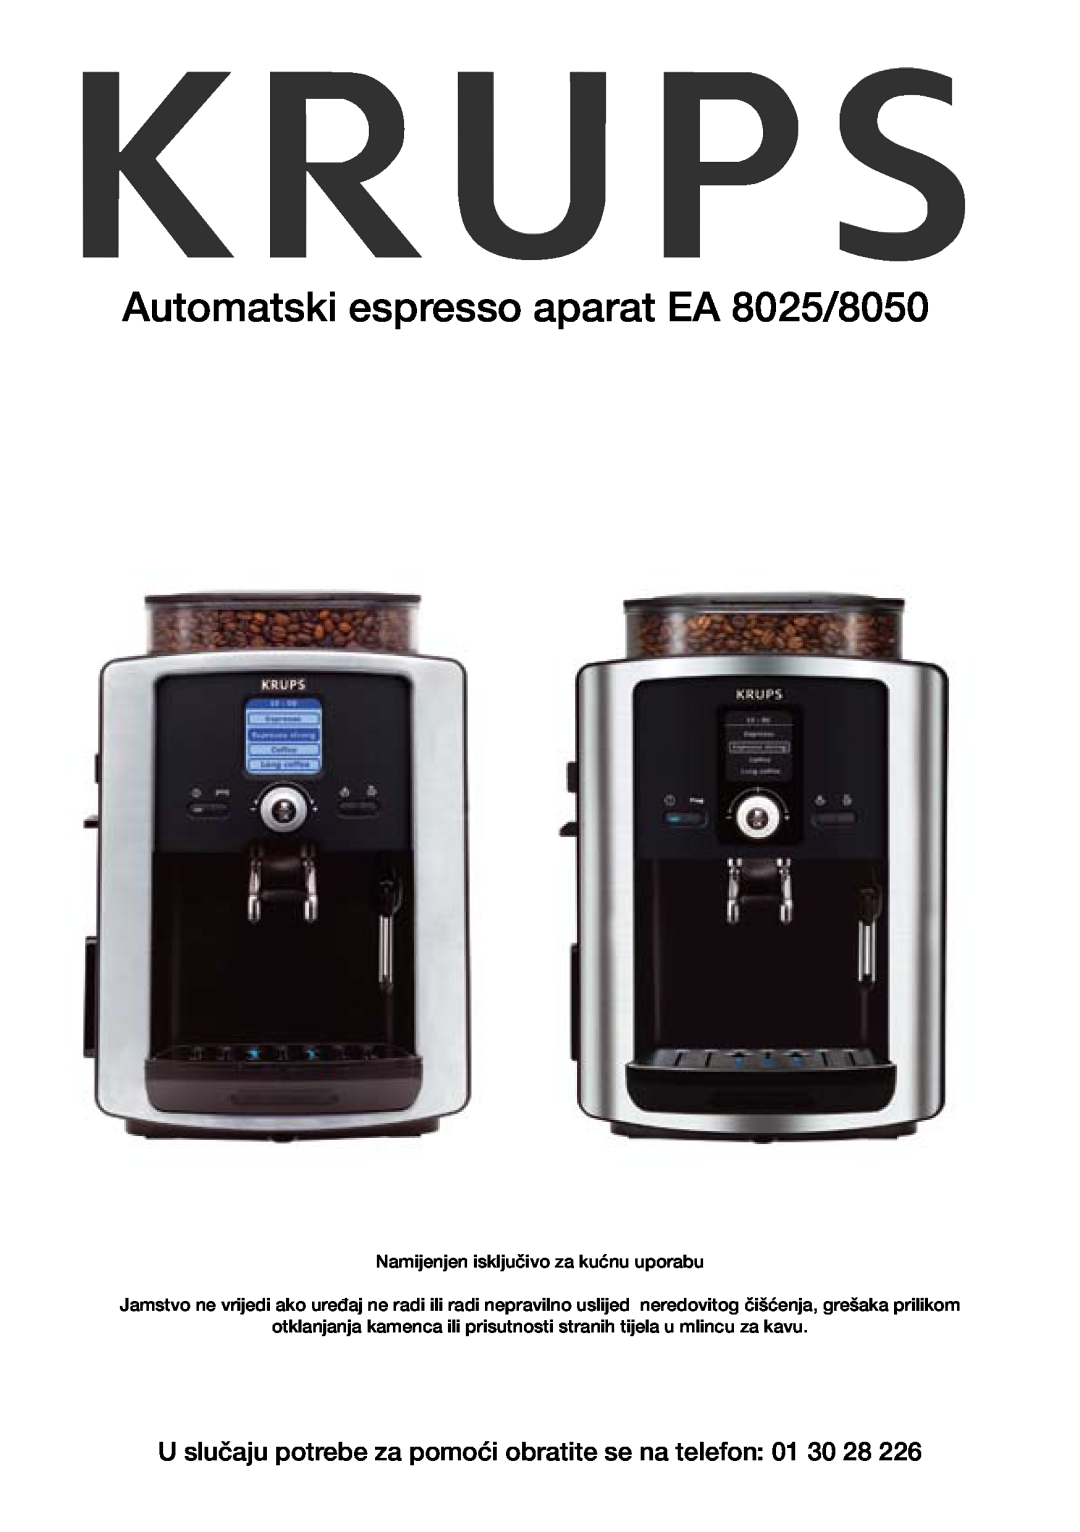 Krups manual U slučaju potrebe za pomoći obratite se na telefon 01 30 28, Automatski espresso aparat EA 8025/8050 